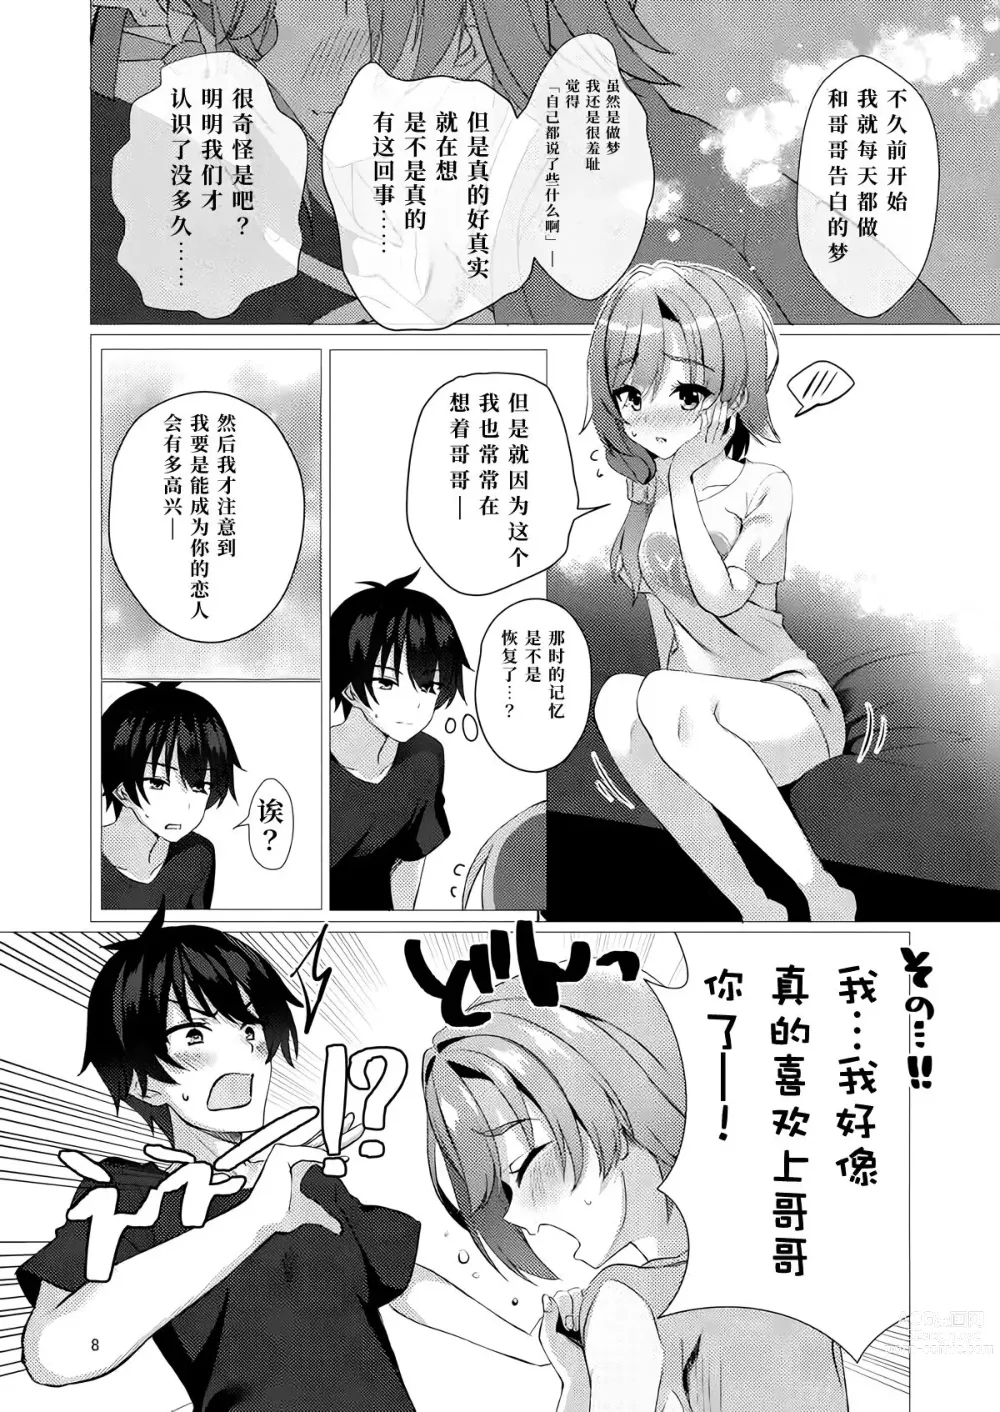 Page 7 of doujinshi 若已与你在梦中相遇过。